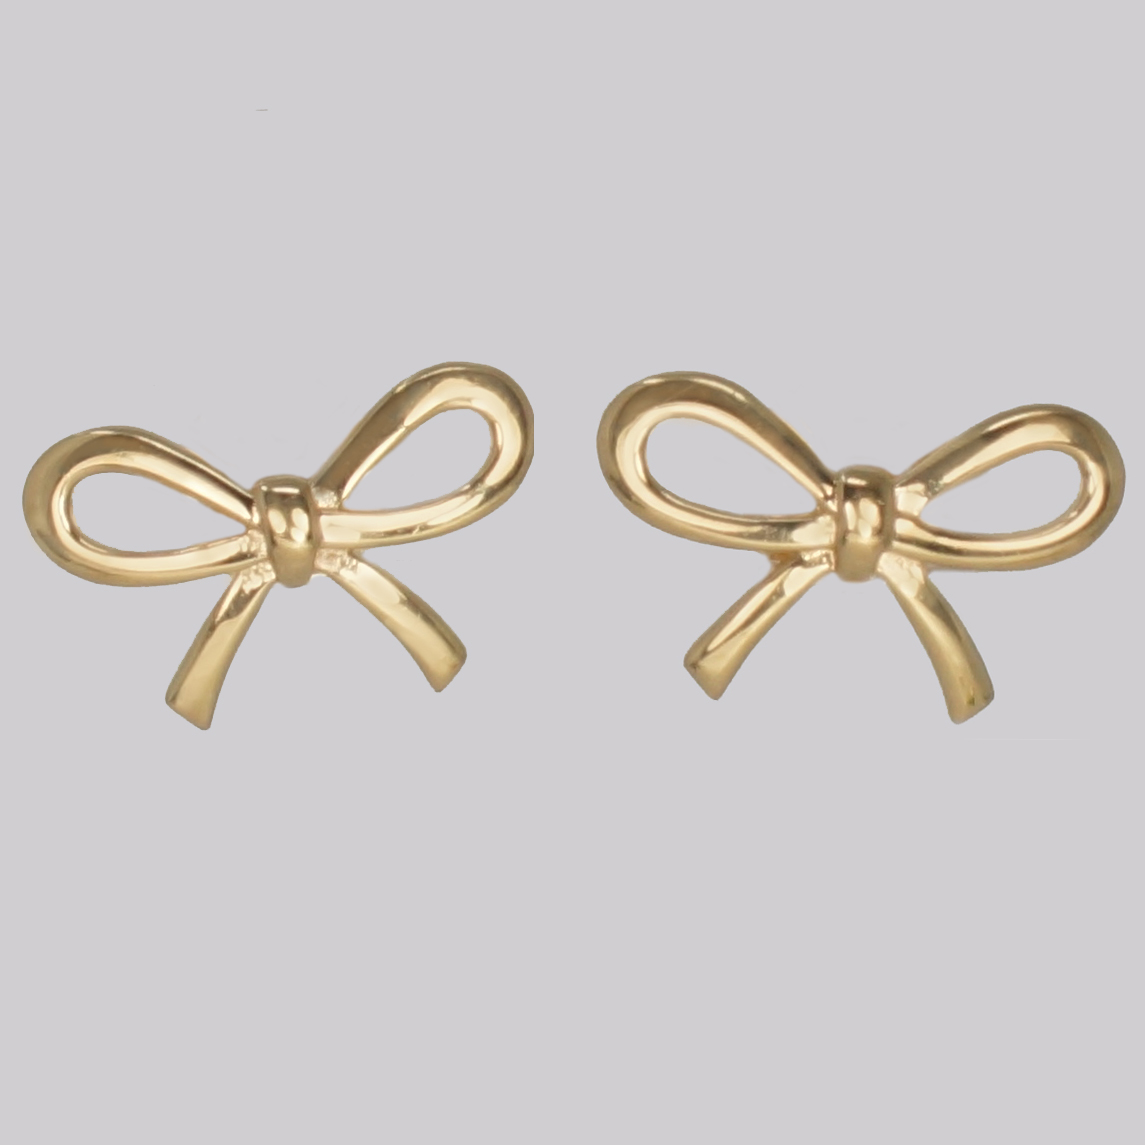 Little Bow earrings - Barn red everyday jewellery contemporary enamel  earrings, minimal jewellery – AZGA